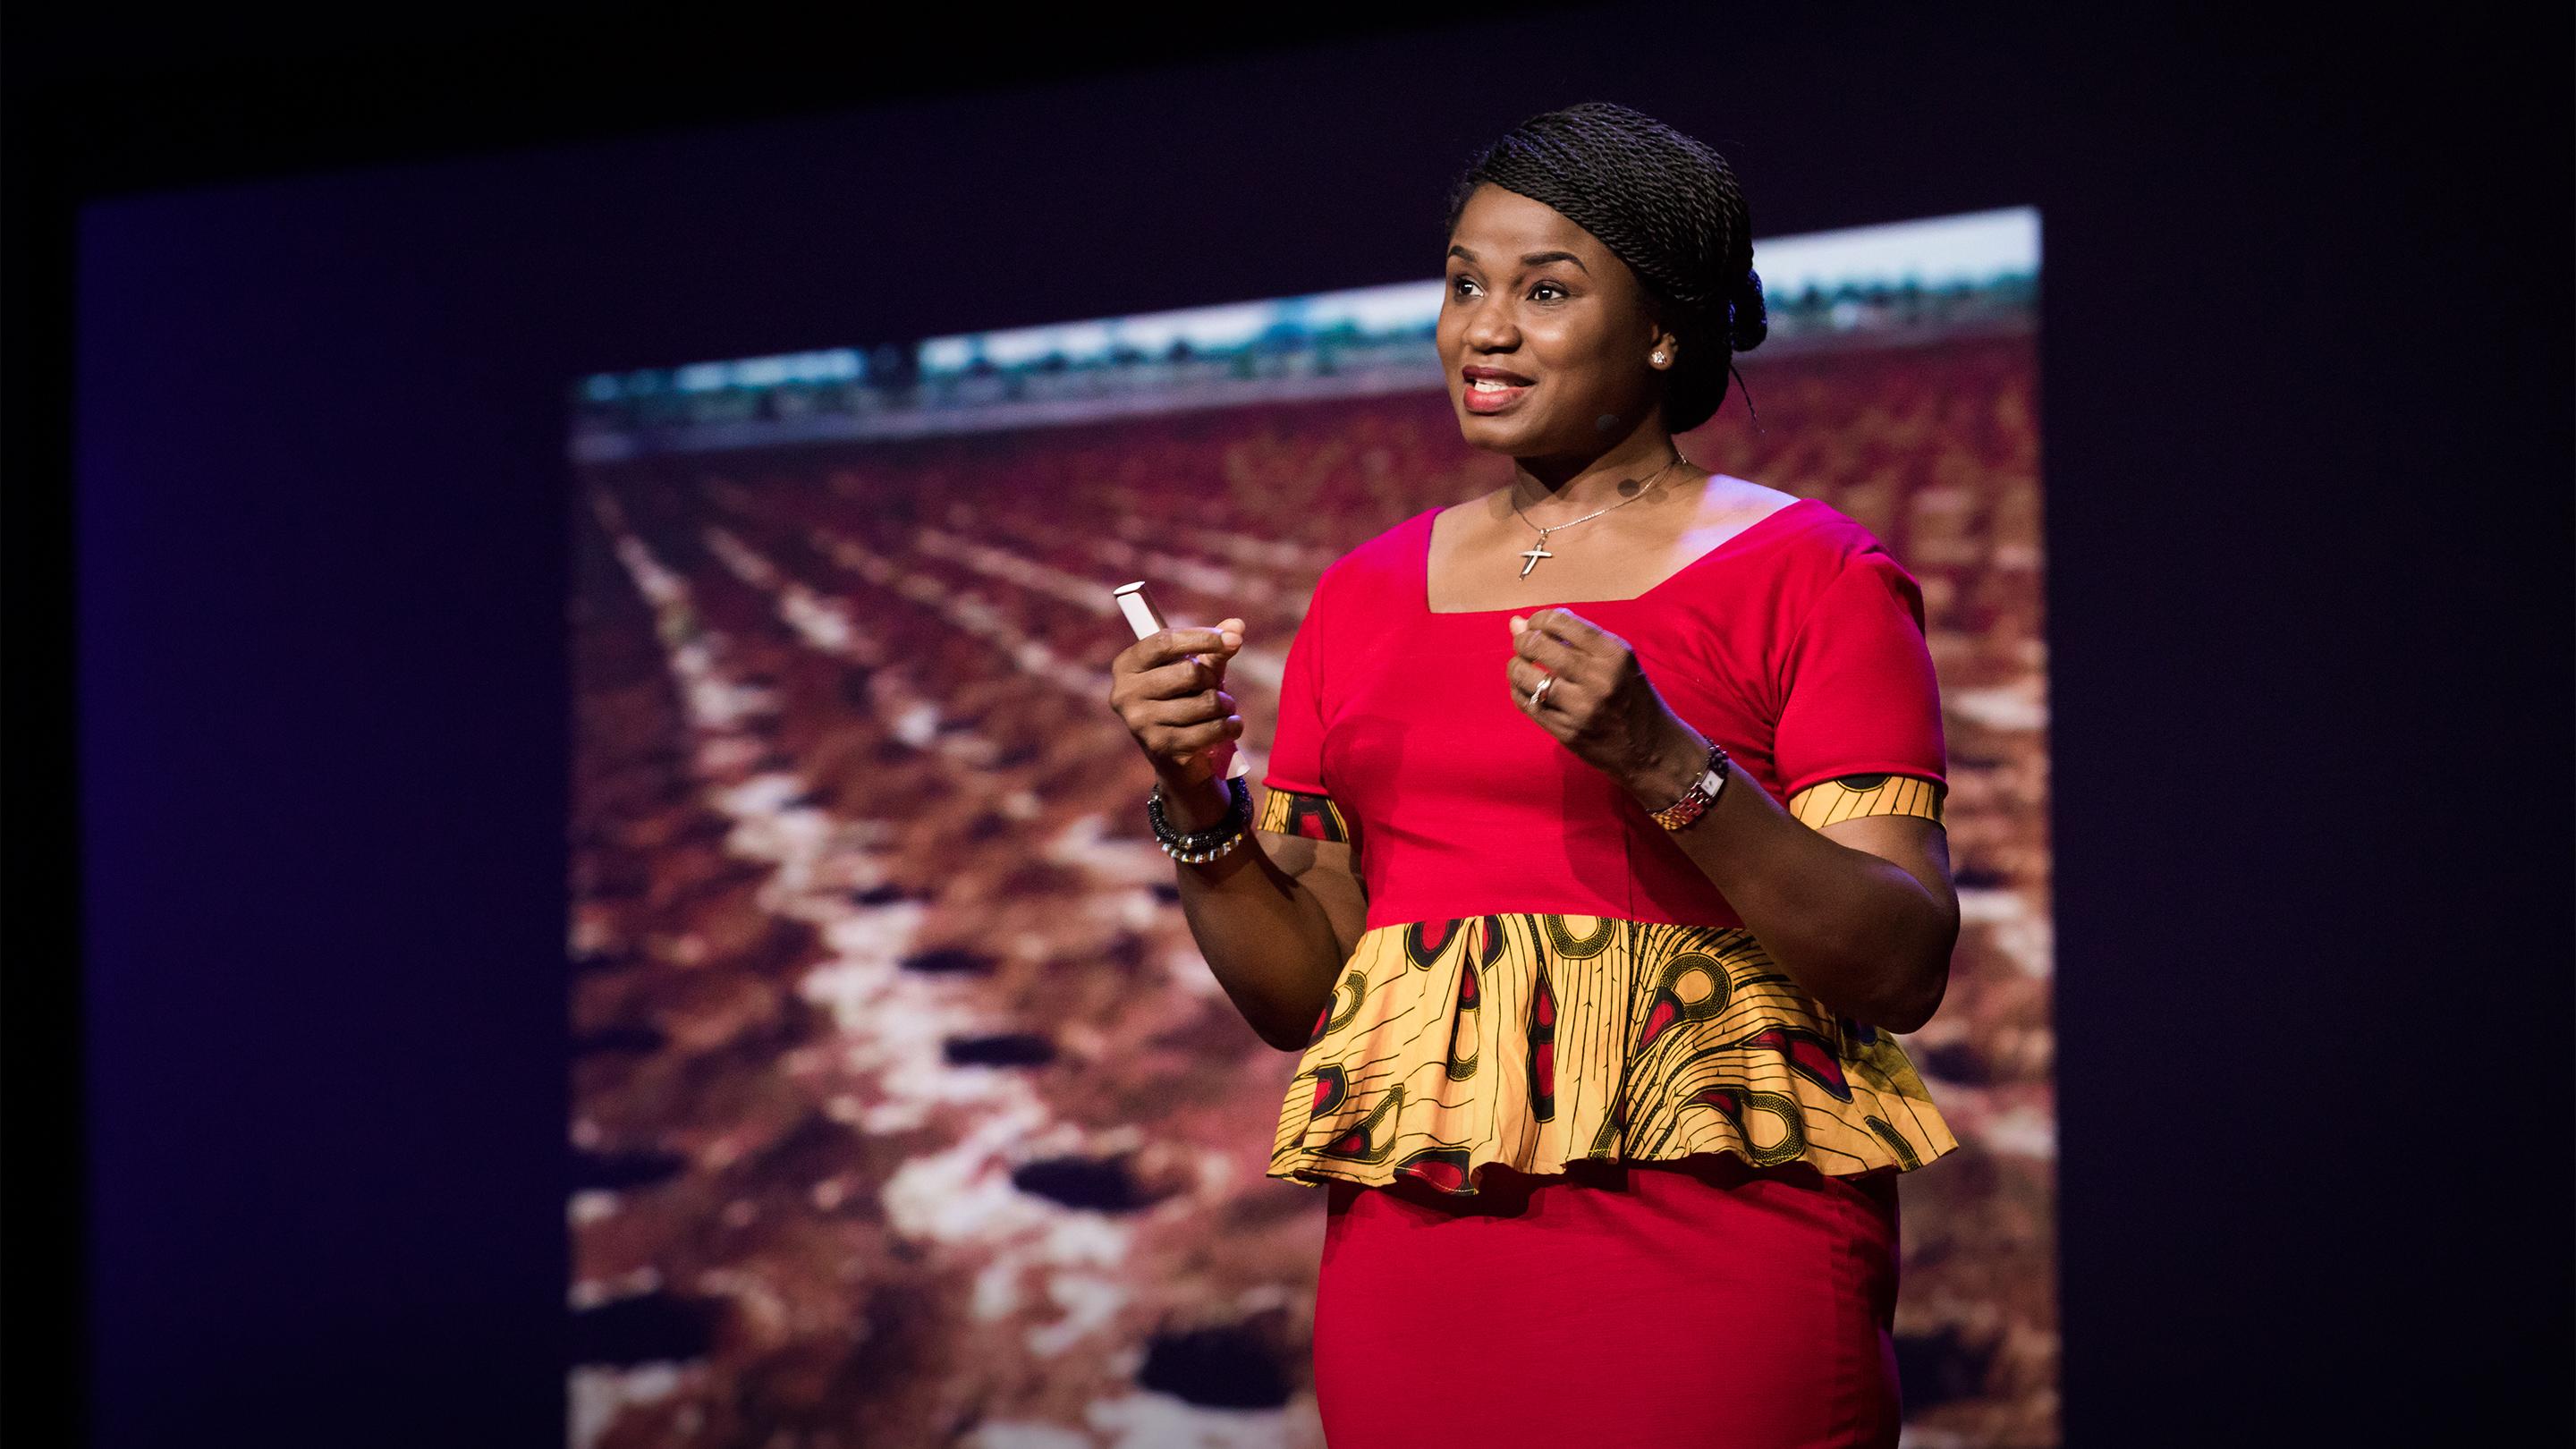 Cómo puede África progresar gracias a sus conocimientos tradicionales | Chika Ezeanya-Esiobu